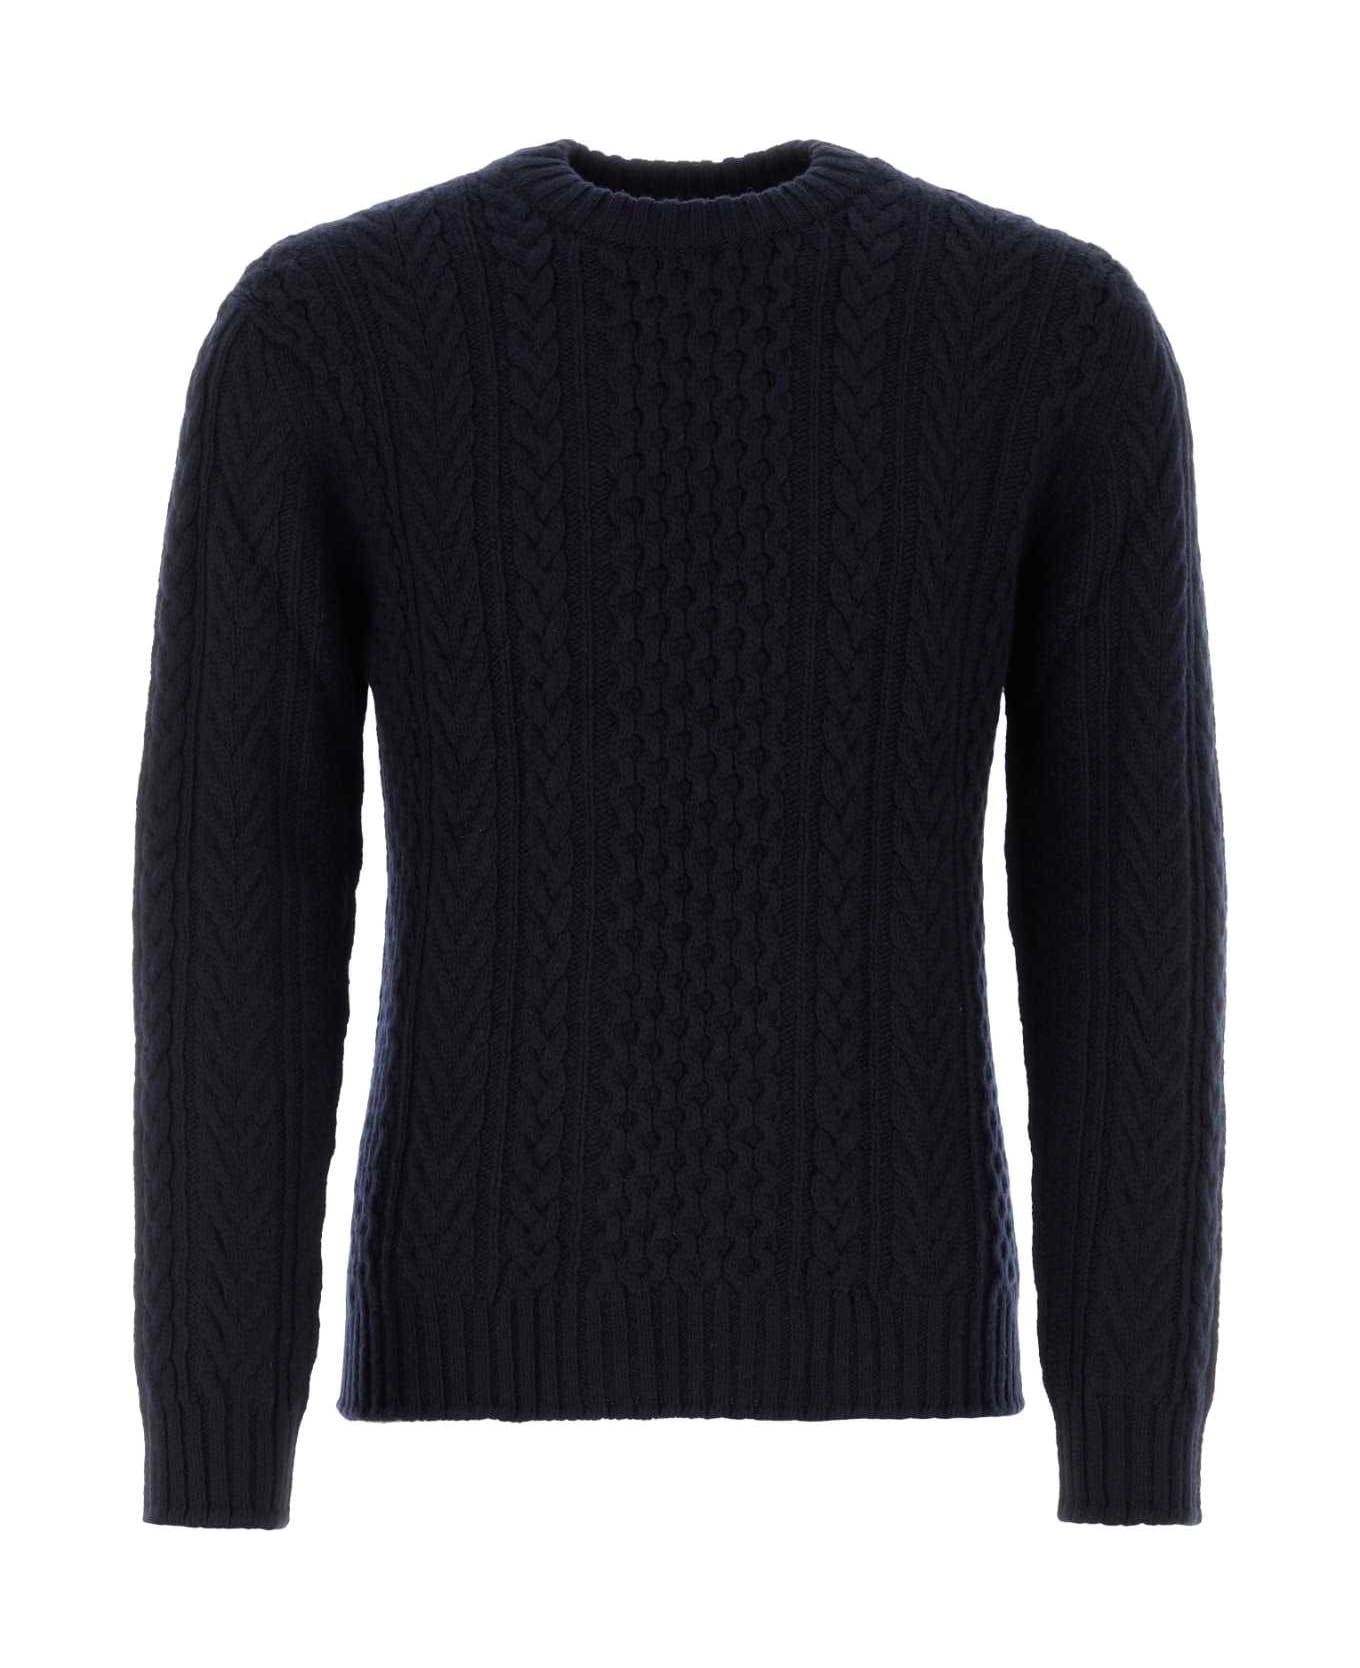 Johnstons of Elgin Black Cashmere Sweater - DARKNAVY